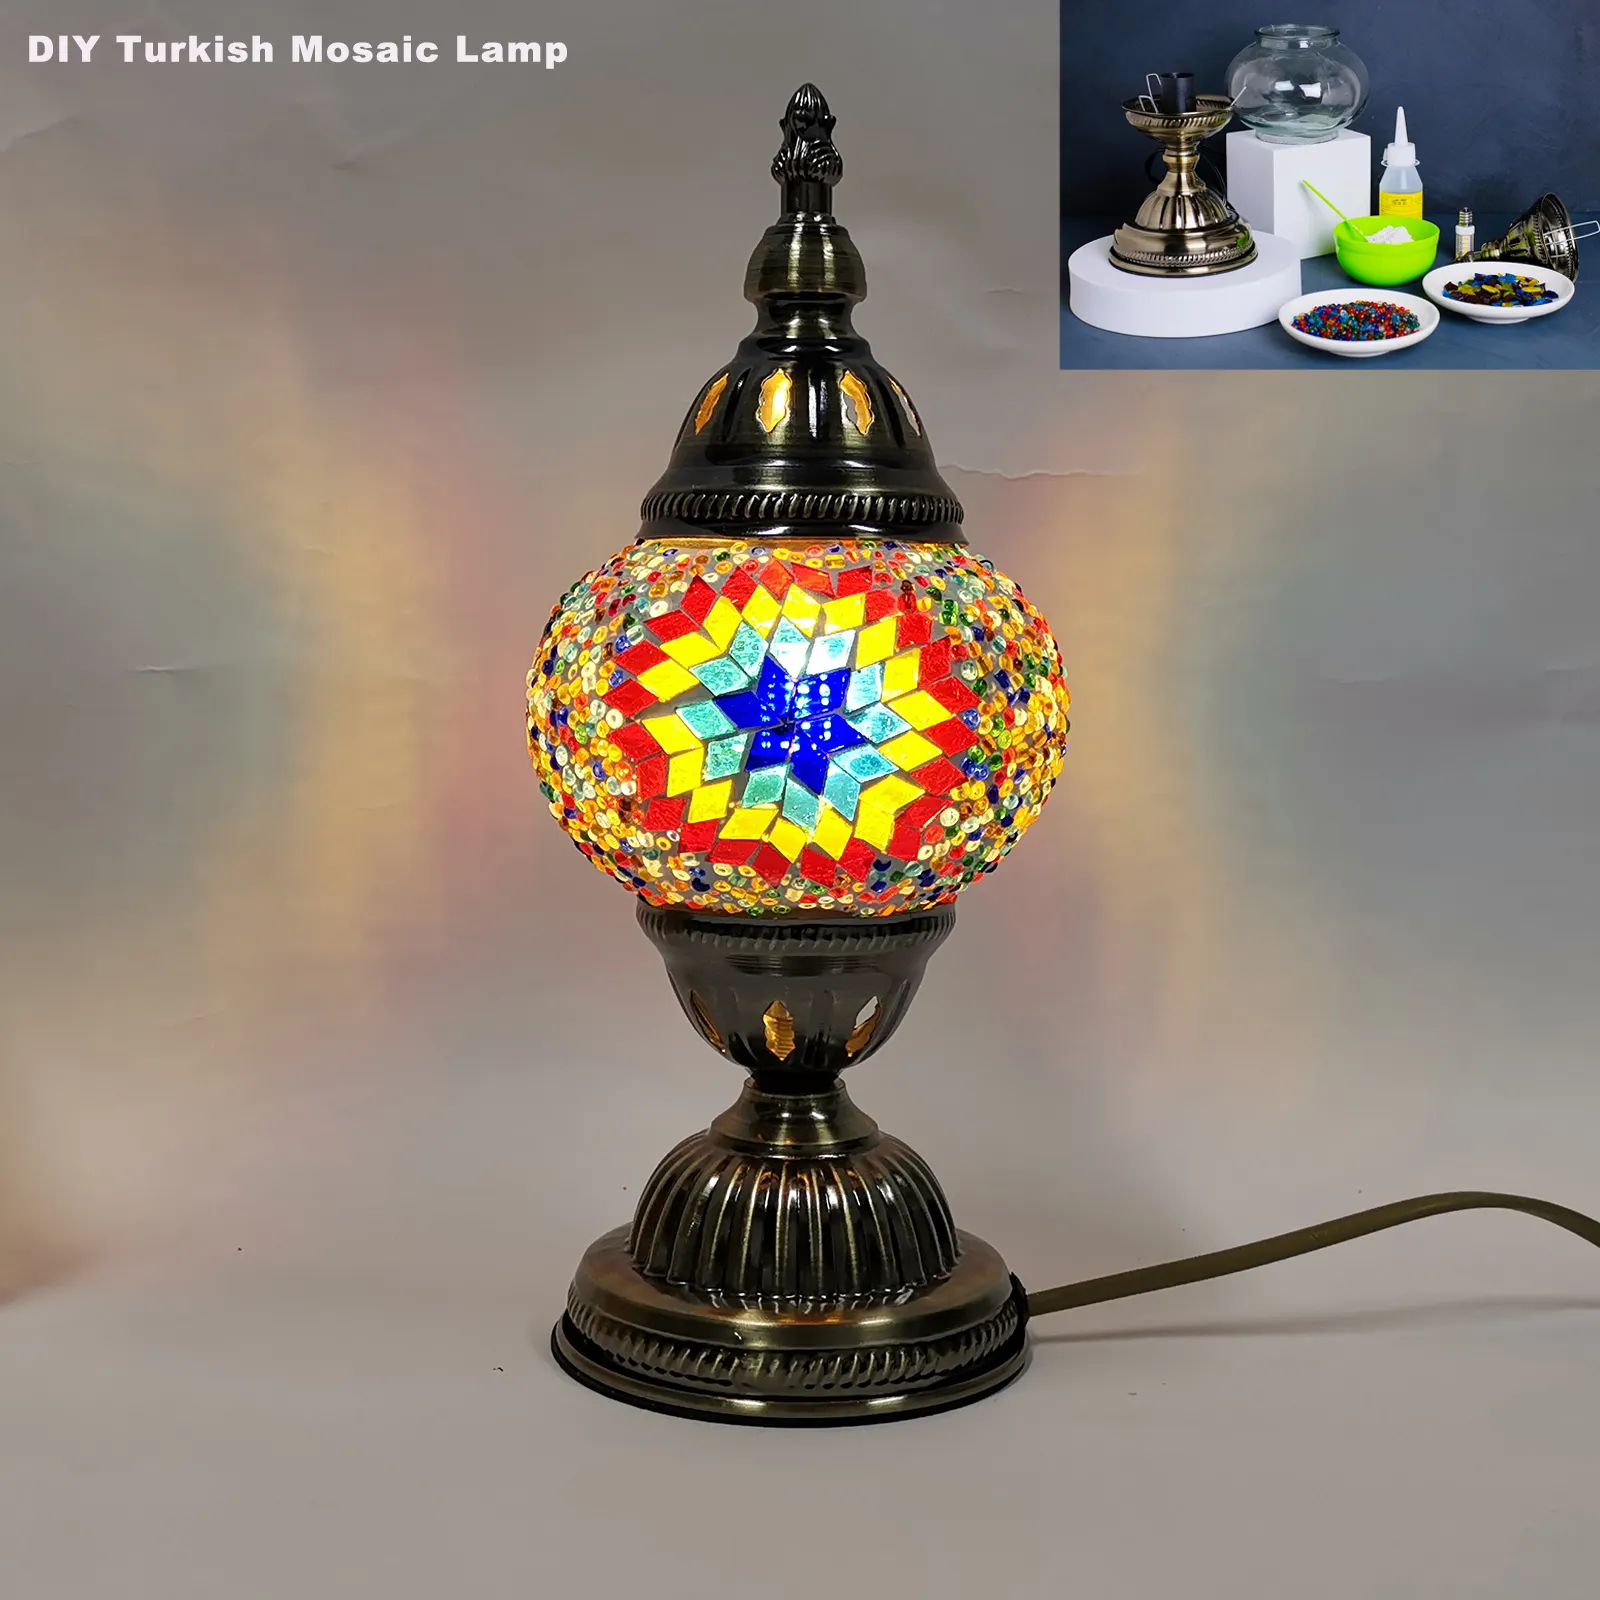 Marrakech DIY Turc Mosaïque Lampe Kit Studio Groupe Pour Construire Champ D'échauffement Parent-Enfant Couples DIY Kit Fait À La Main Lampe